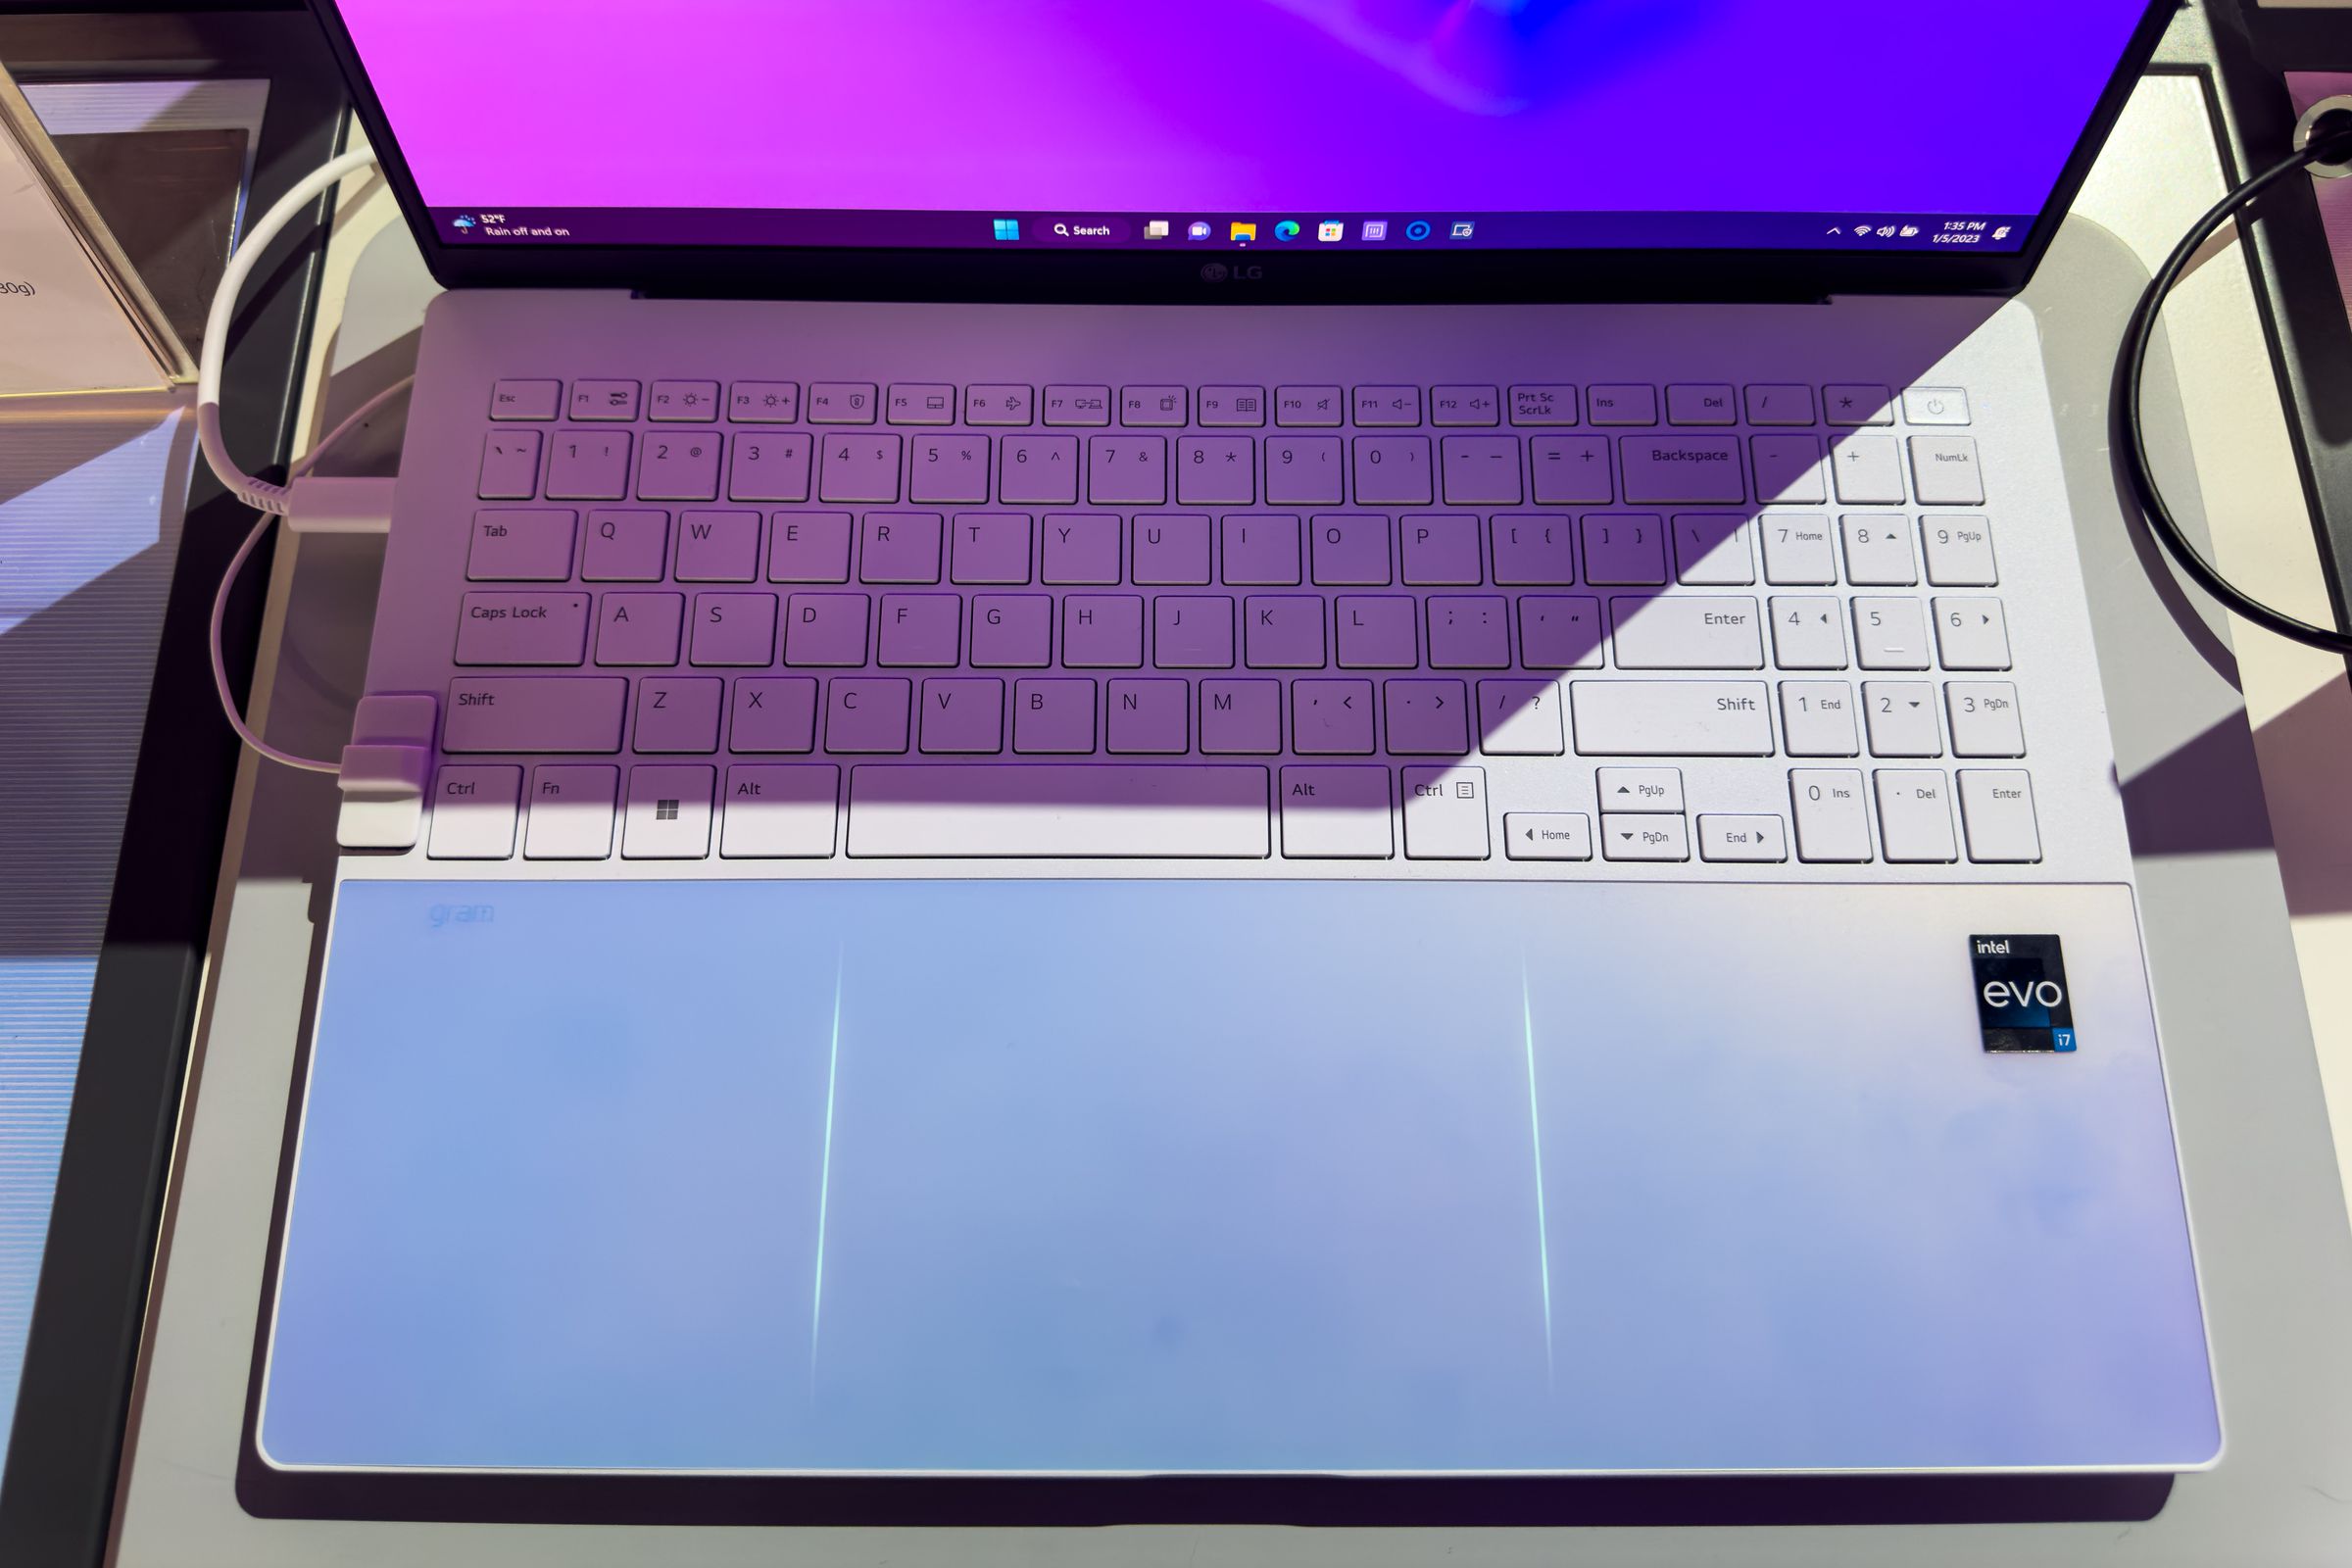 La tastiera LG Gram Style vista dall'alto con i LED del touchpad illuminati.